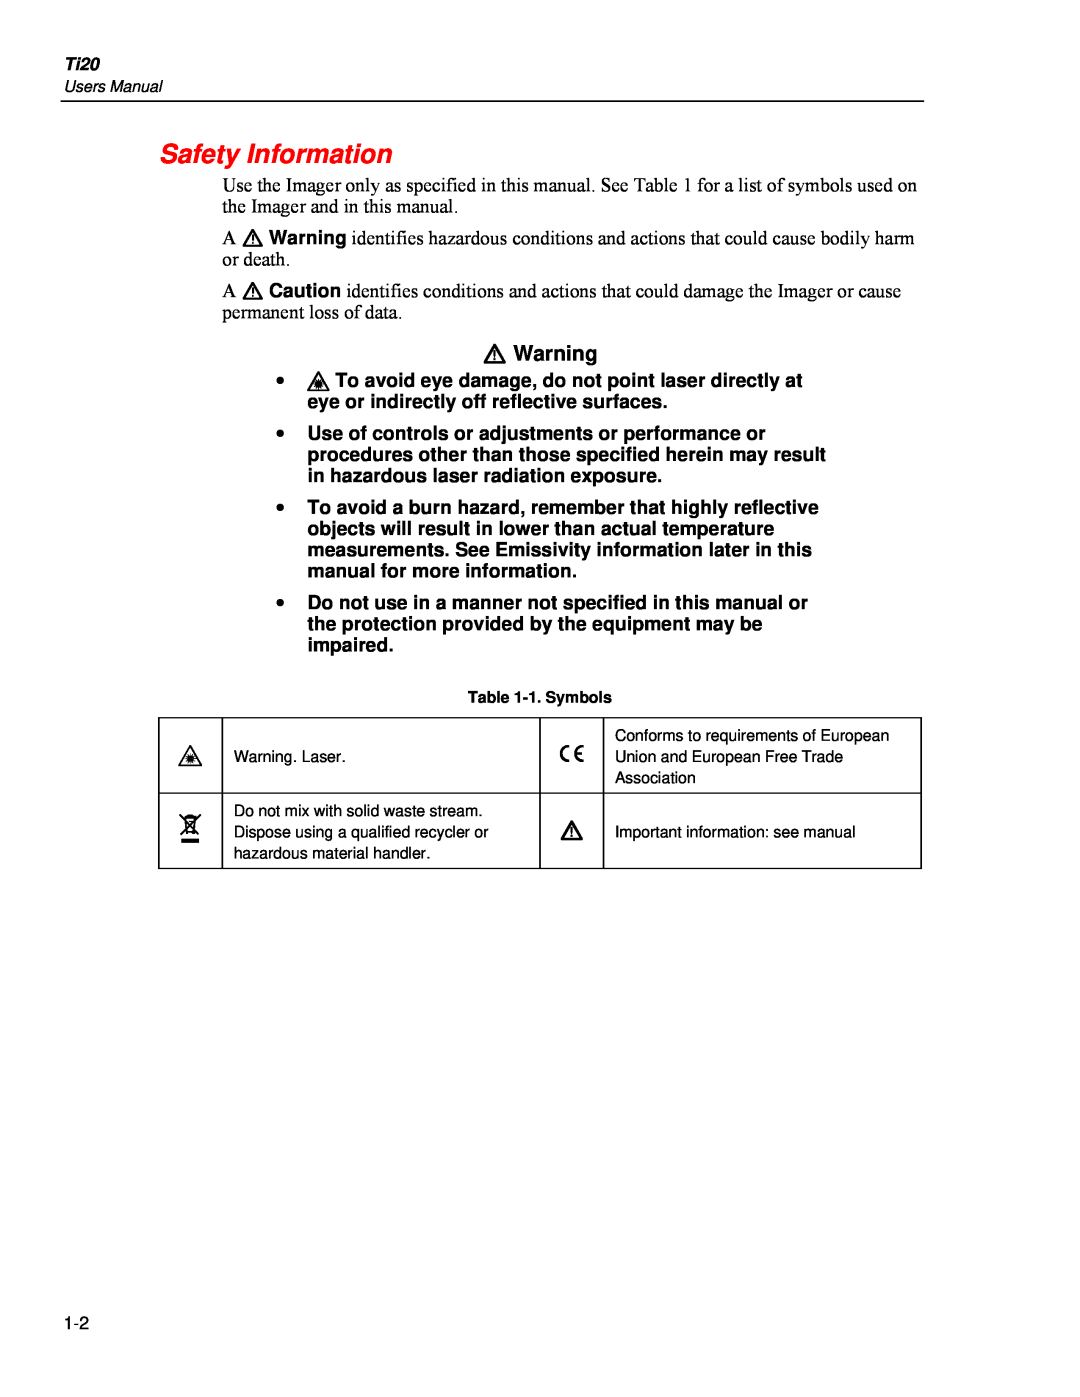 Fluke Ti20 user manual Safety Information, W Warning 